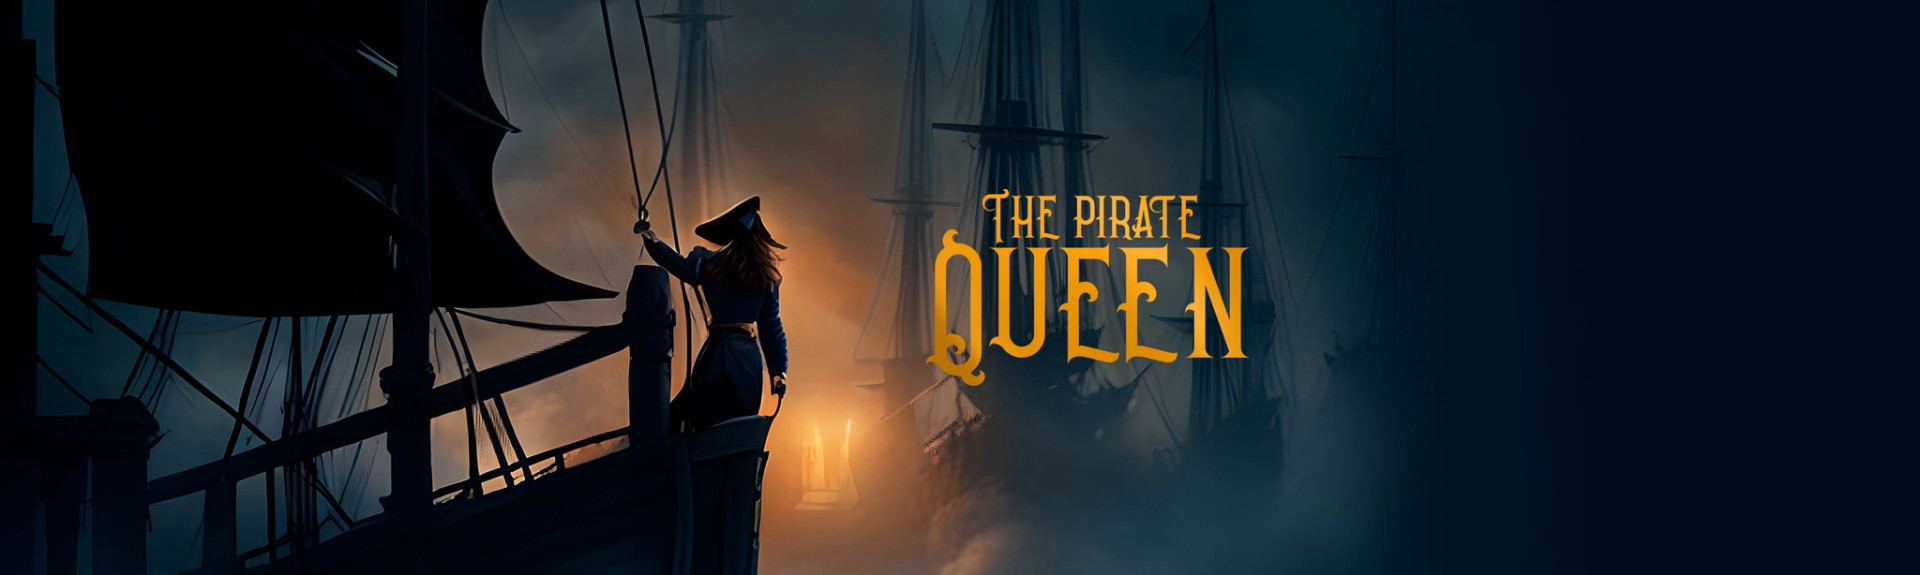 The Pirate Queen: A Forgotten Legend